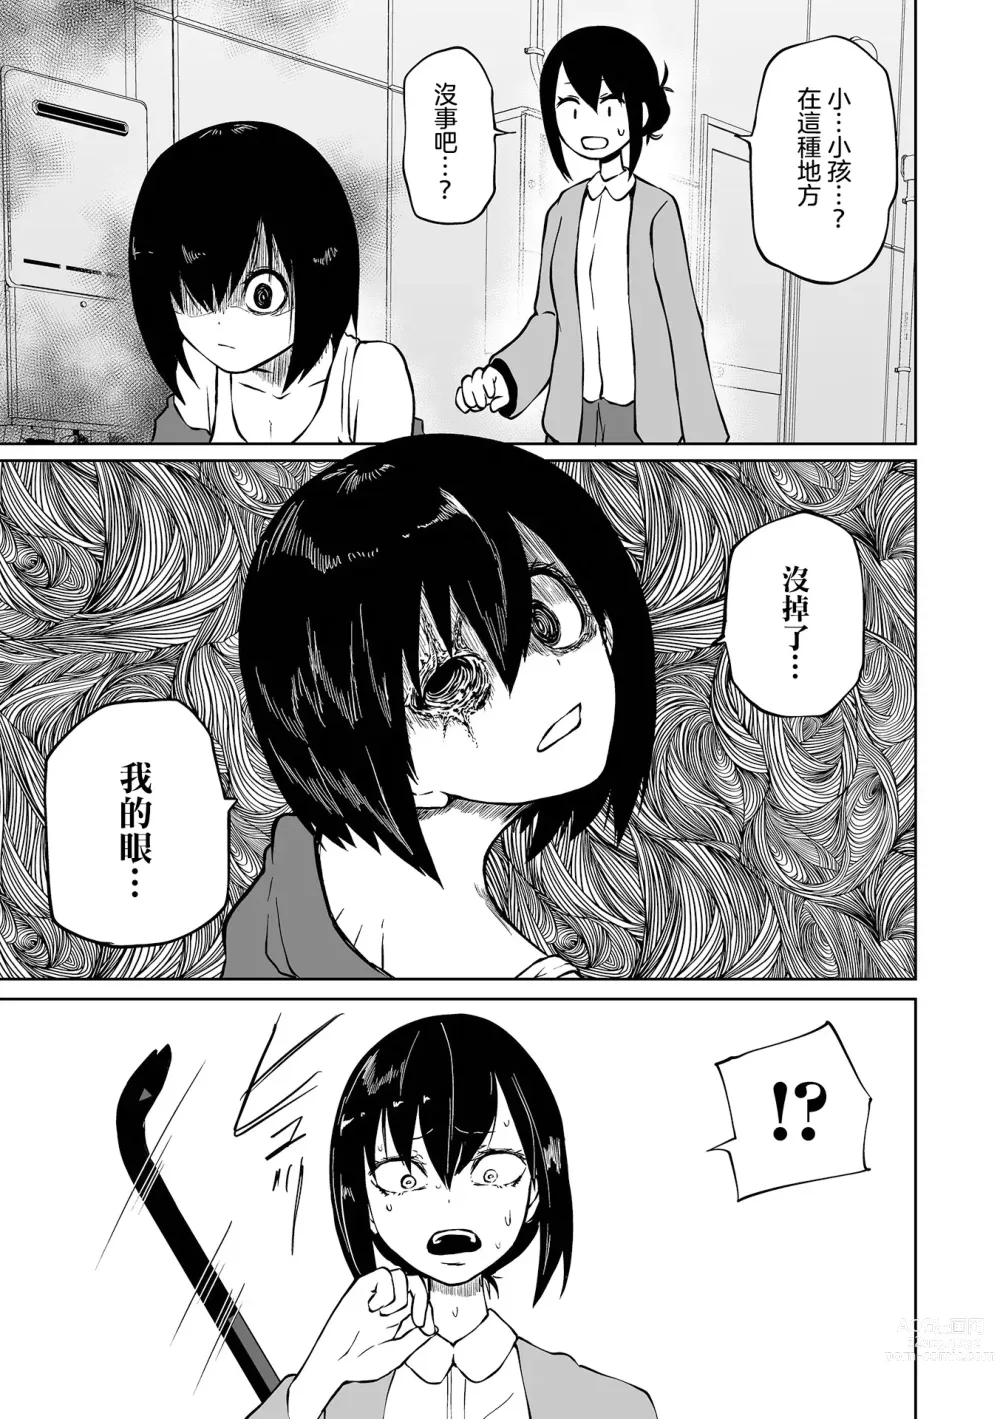 Page 6 of manga 地下生活